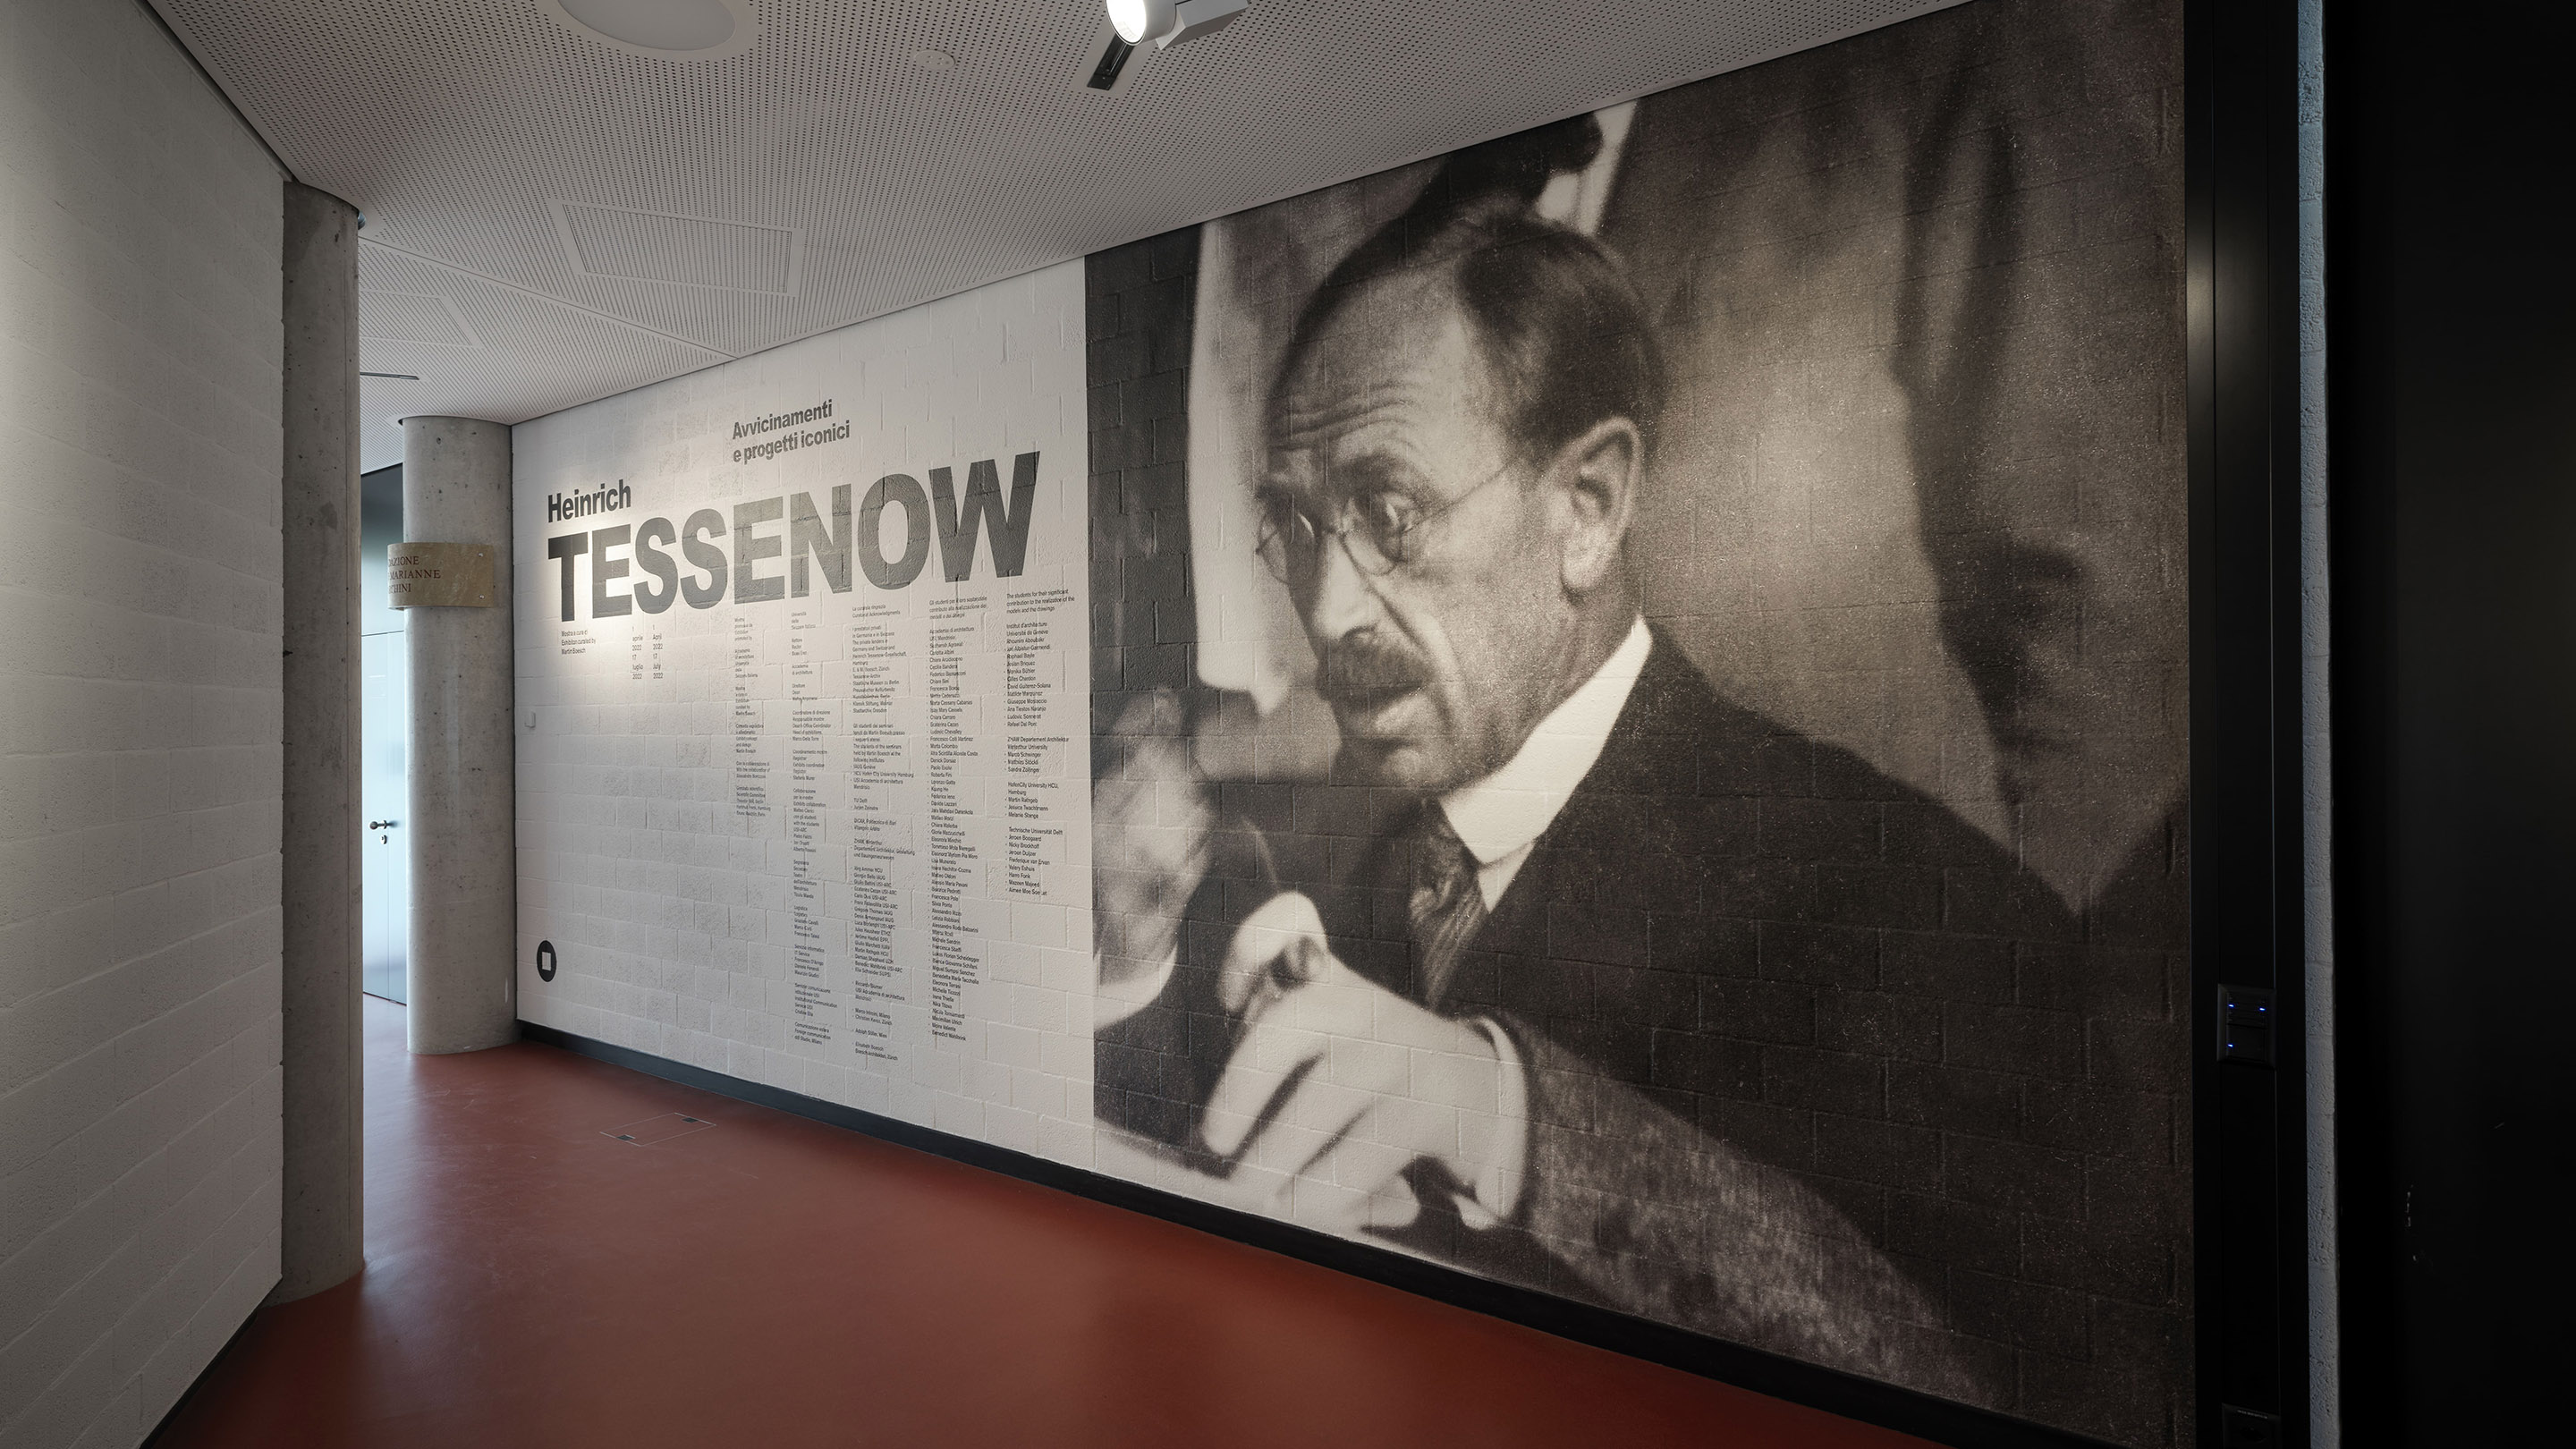 Mostra "Heinrich Tessenow. Avvicinamenti e progetti iconici" al Teatro dell'architettura Mendrisio. Photo Enrico Cano